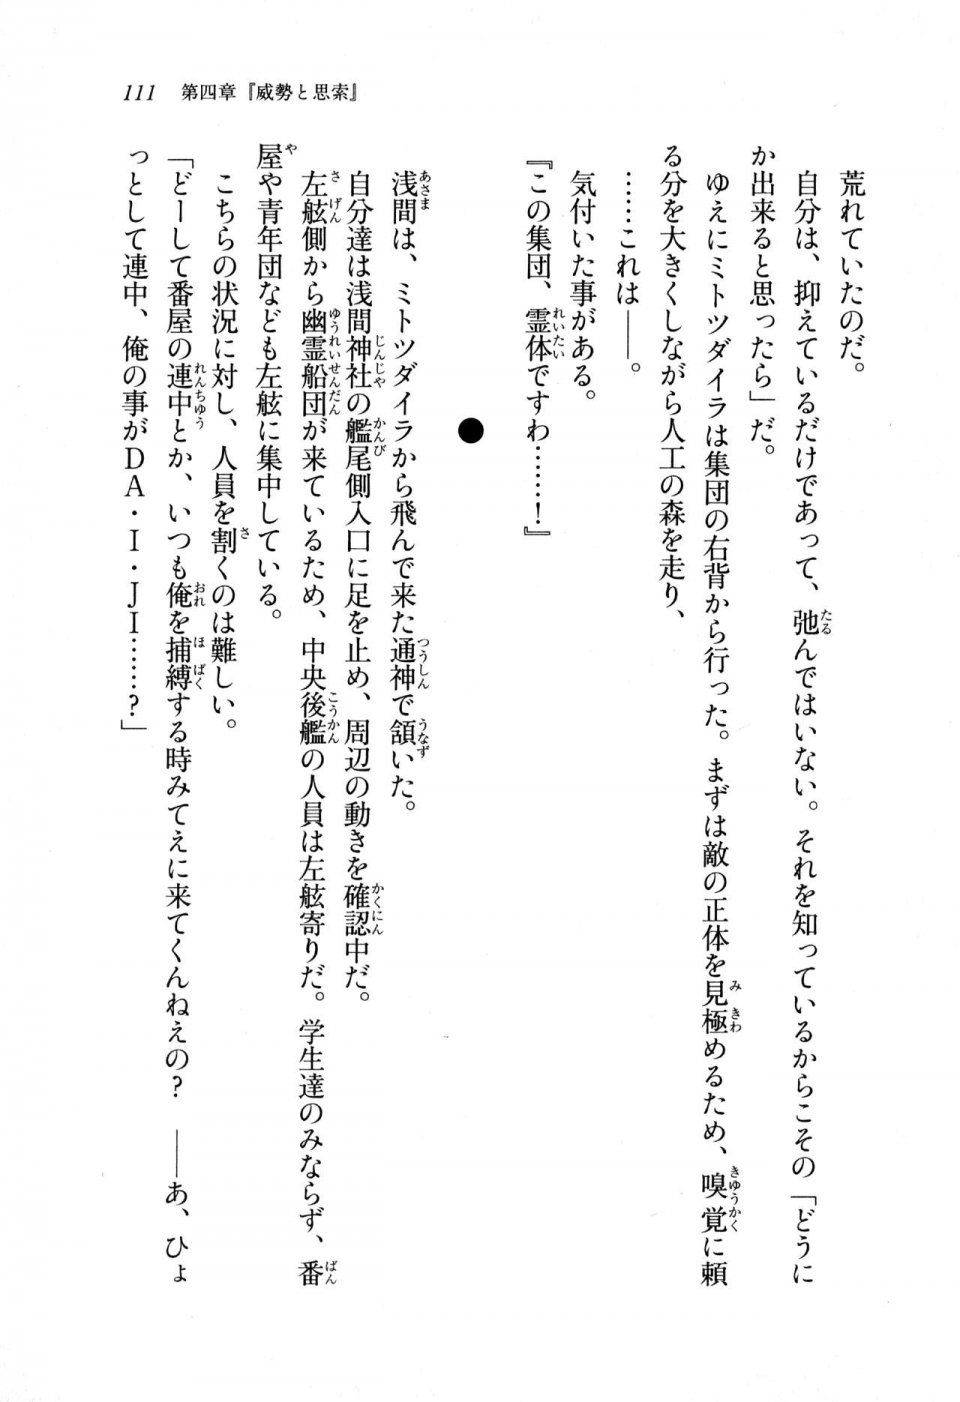 Kyoukai Senjou no Horizon LN Sidestory Vol 1 - Photo #109